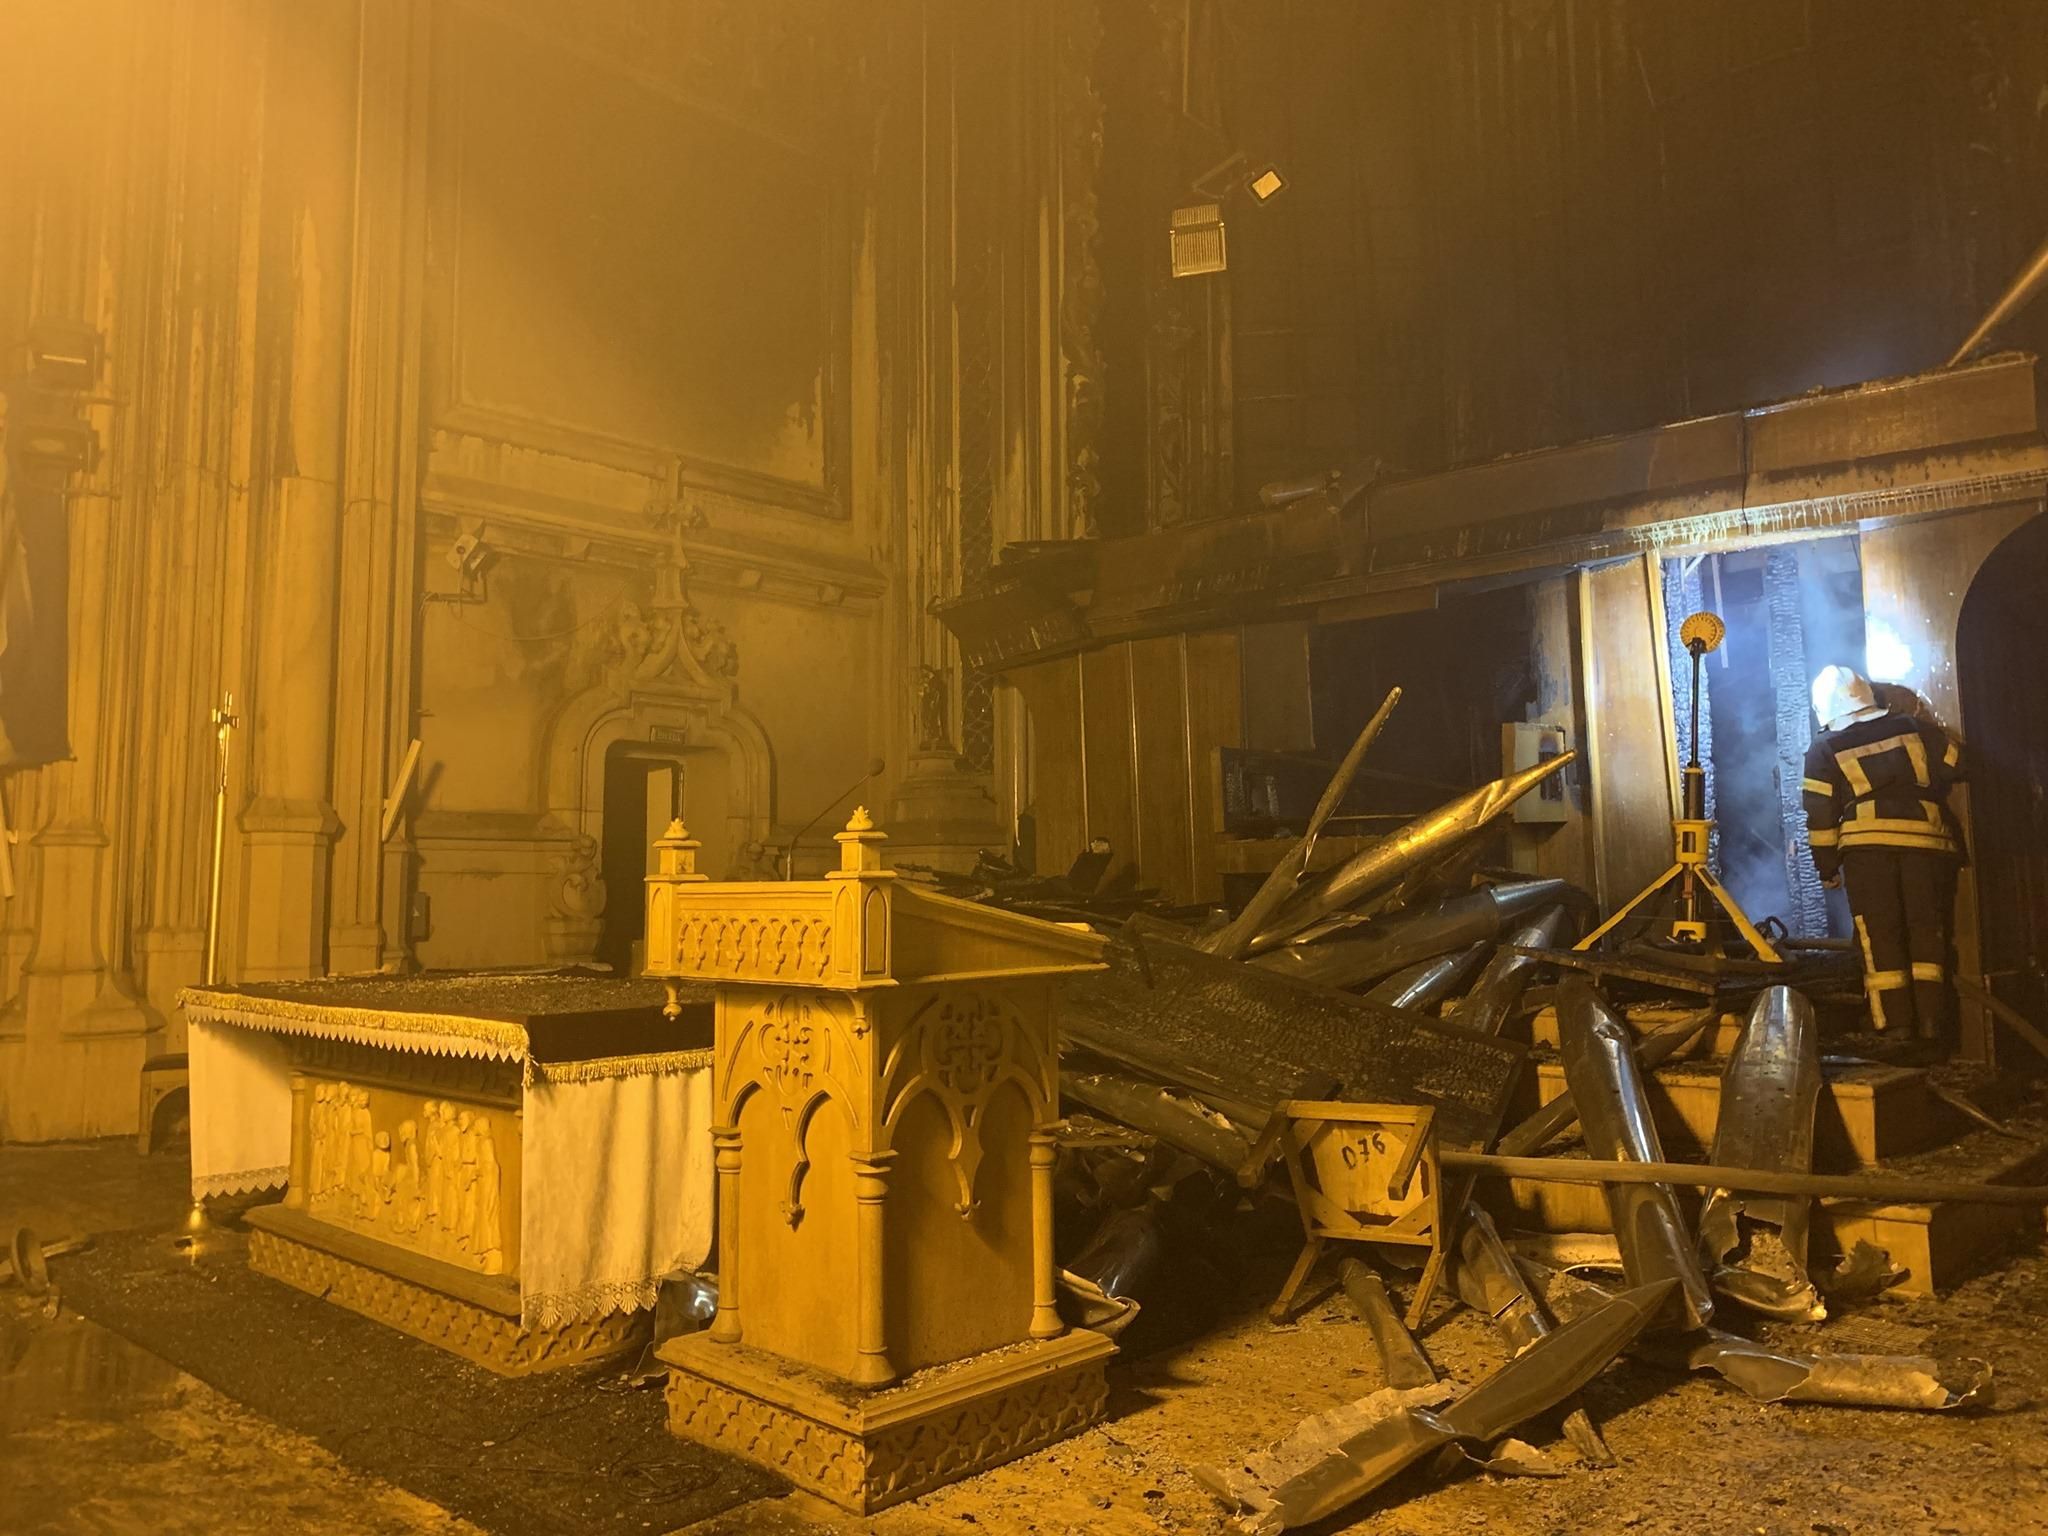 Унікальний орган згорів ущент, – єпископ про пожежу в костелі святого Миколая - Новини Київ - Київ